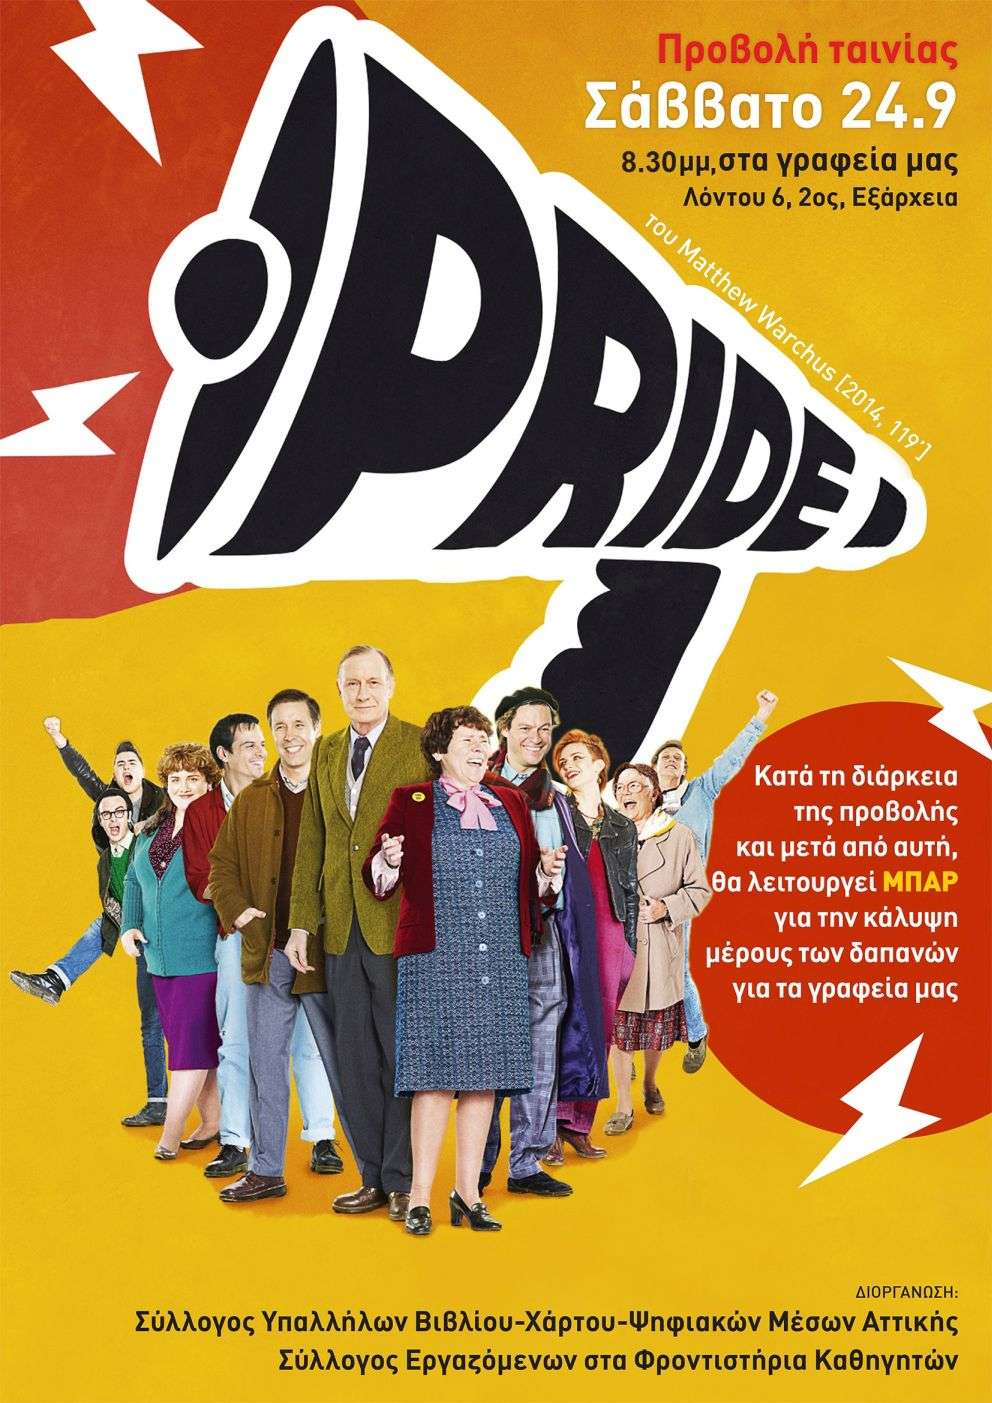 Αθήνα: Προβολή ταινίας «Pride» και bar οικονομικής ενίσχυσης [Σάββατο 24/09, 20:30]